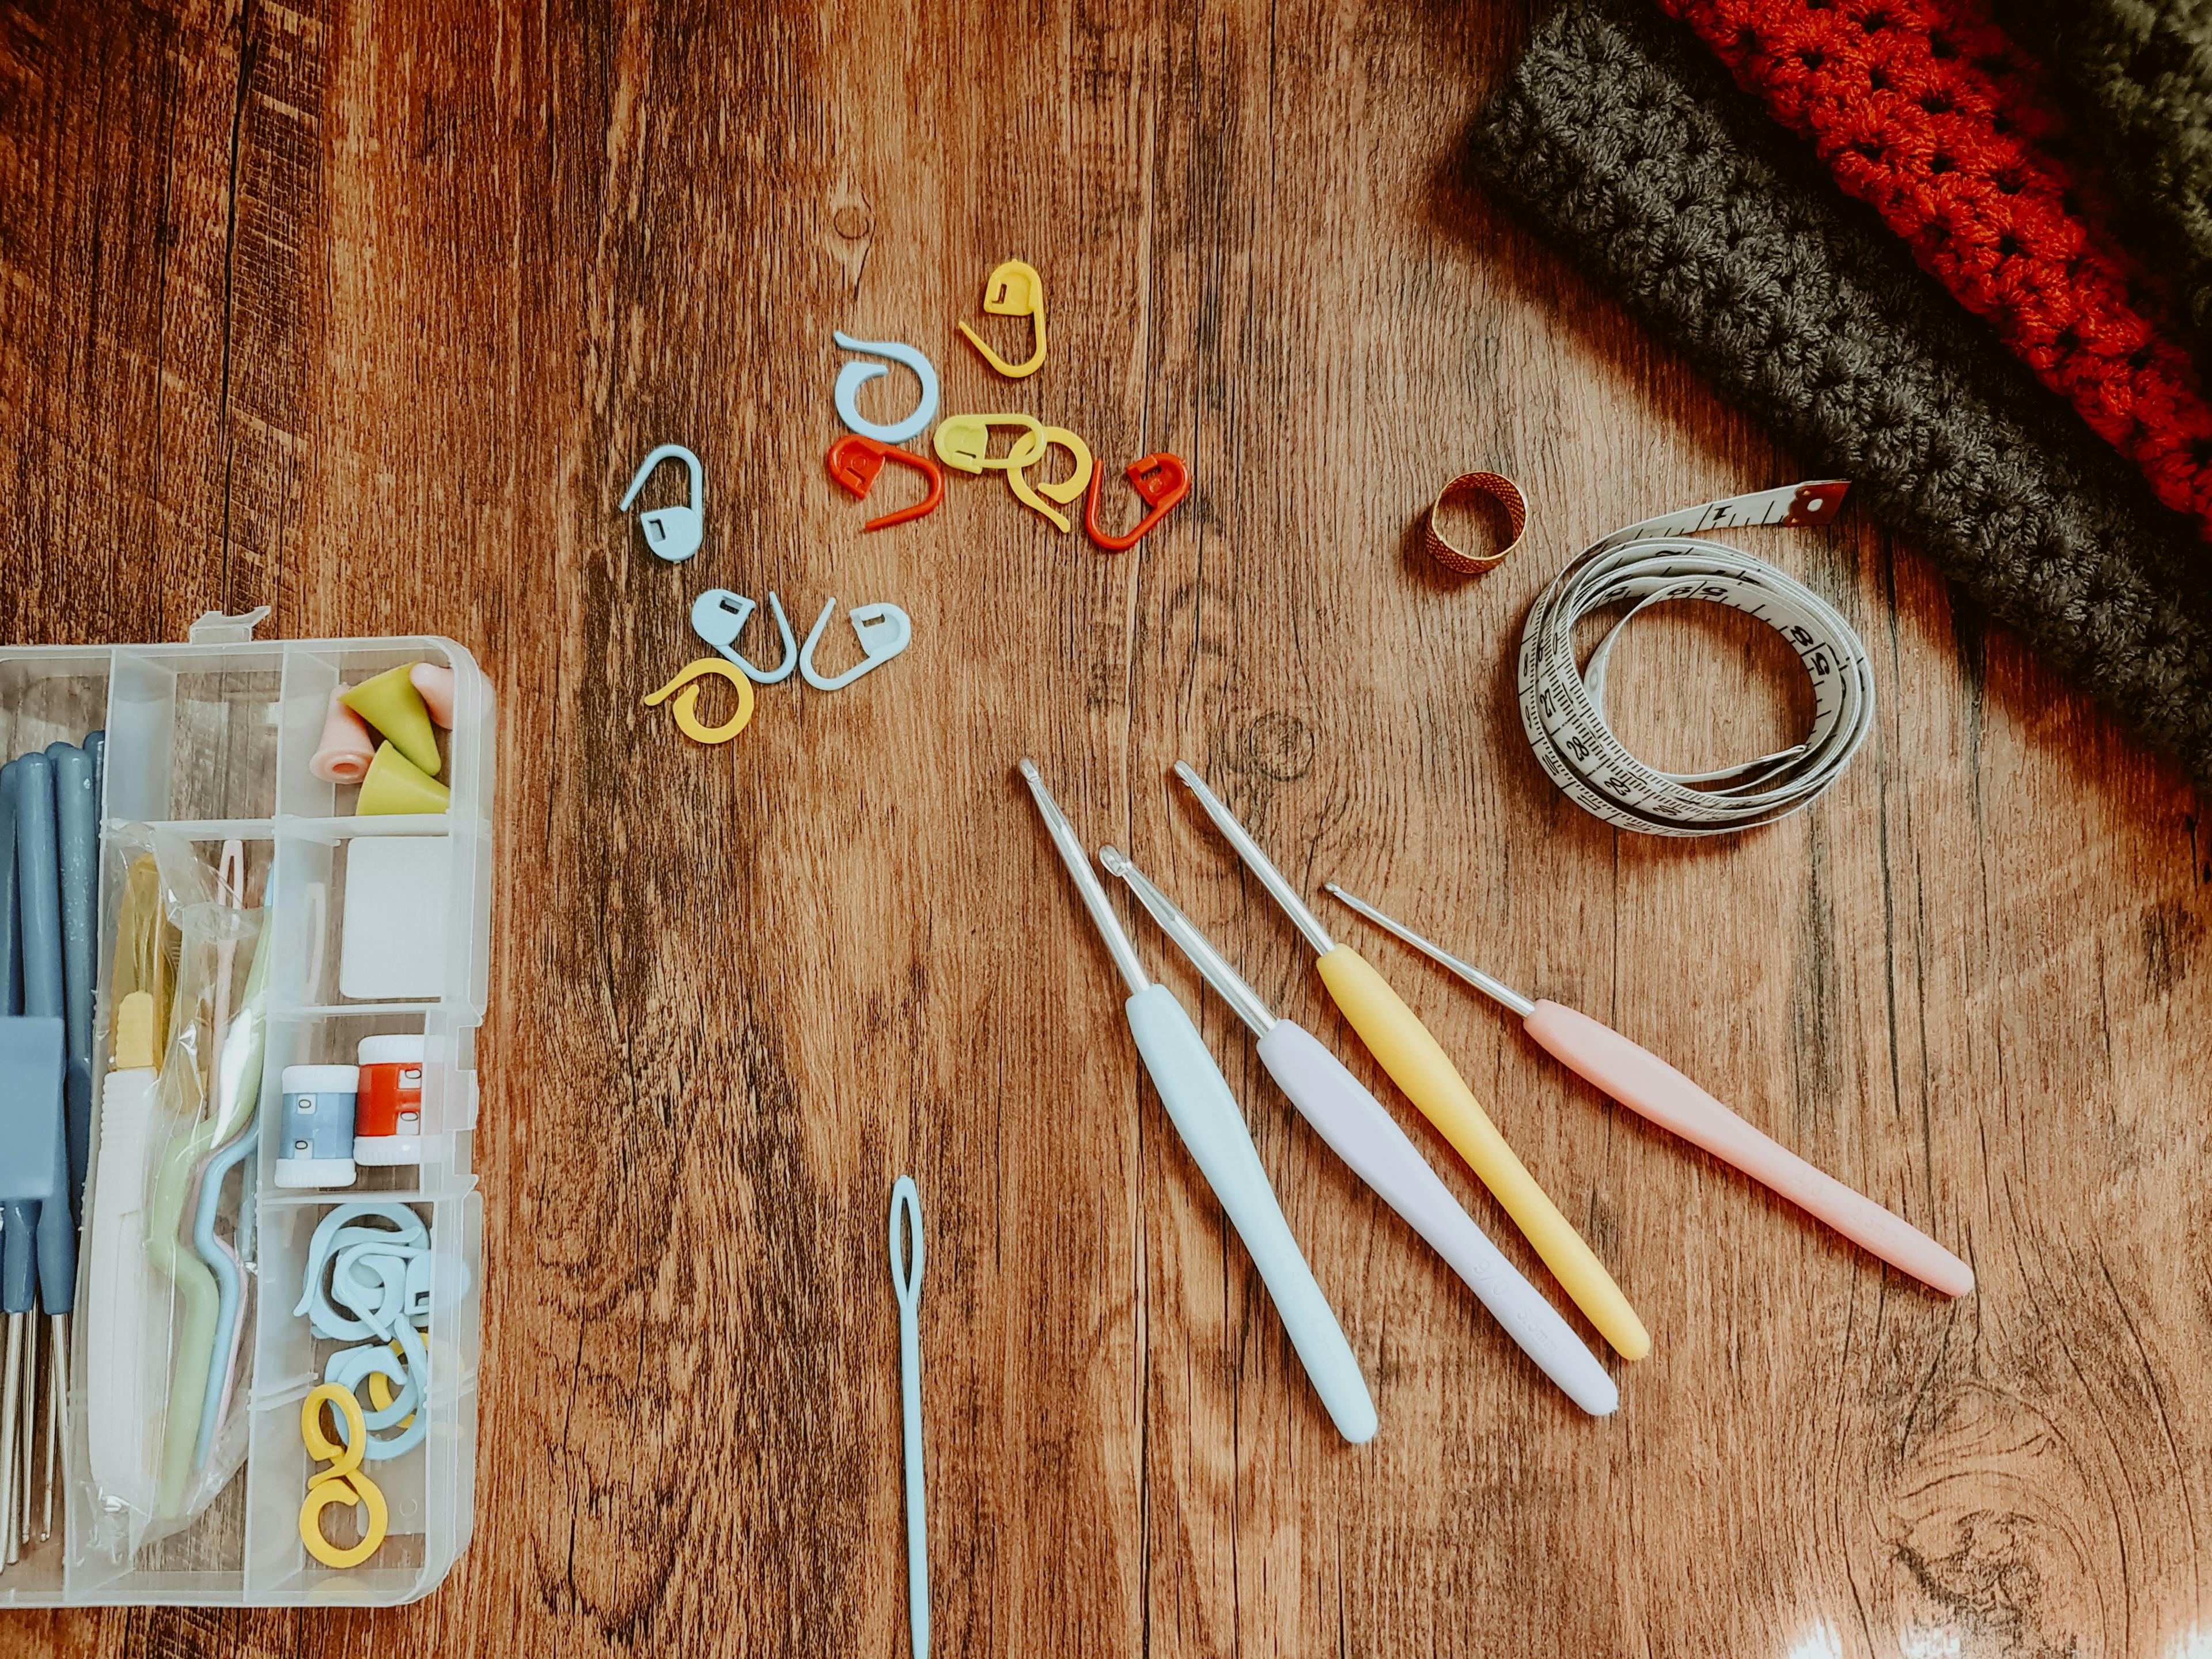 8 Beginner's tips for crocheting